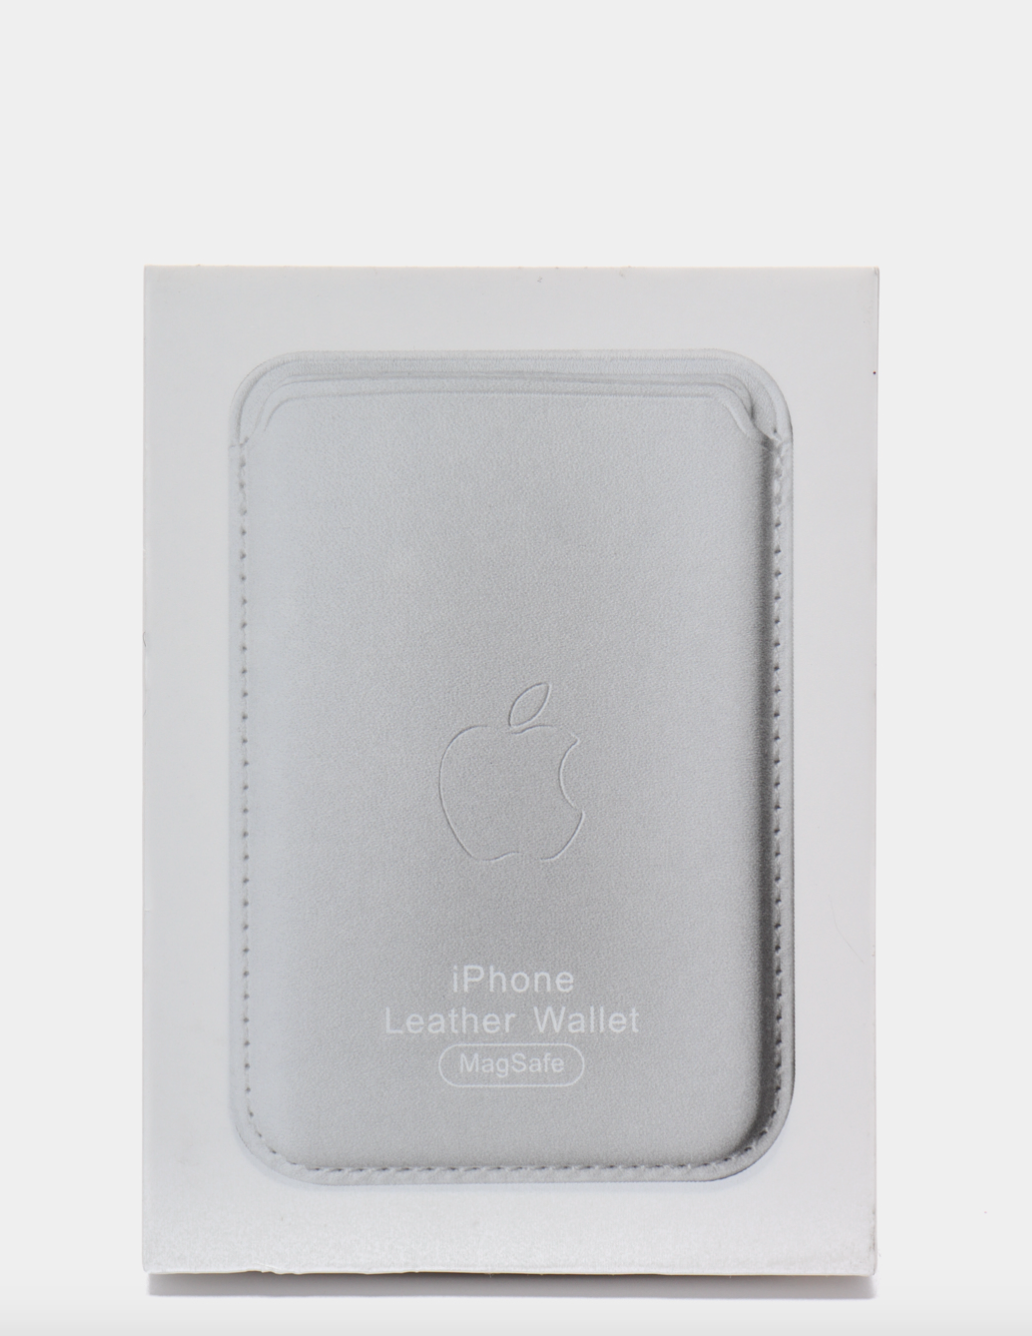 Чехол-бумажник белый картхолдер на iPhone с поддержкой MagSafe Leather Wallet